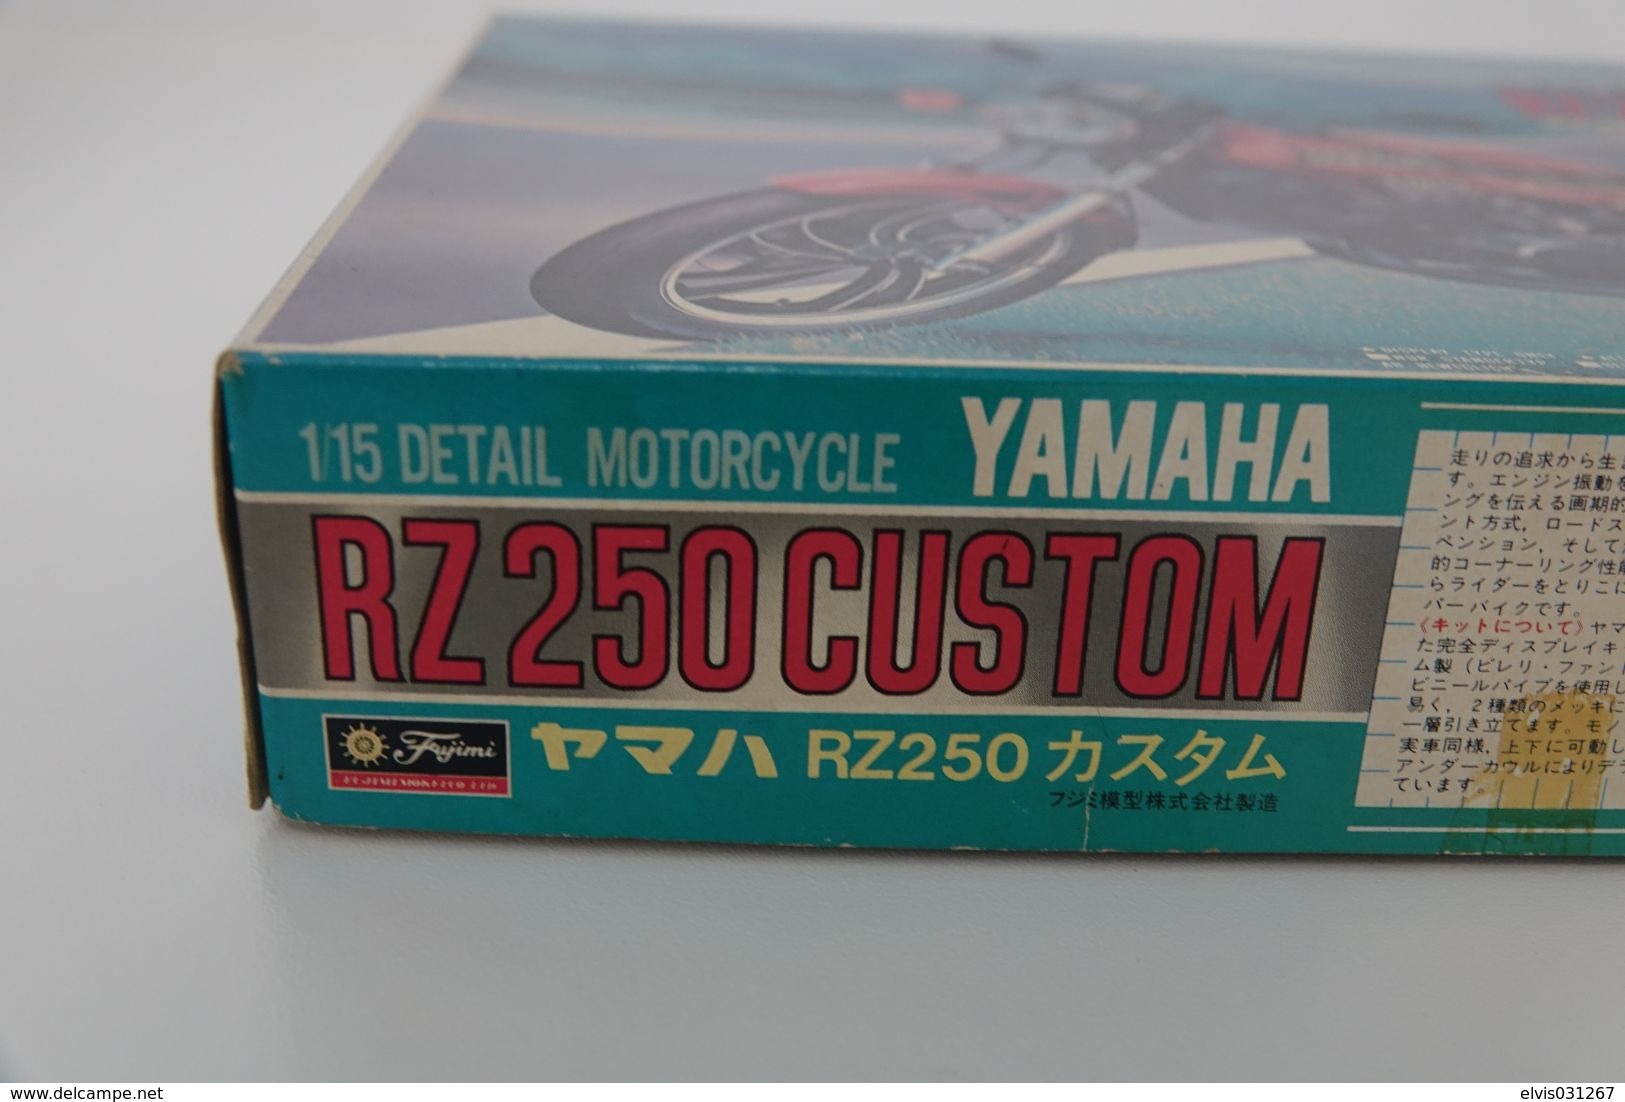 Vintage MODEL KIT : Fujimi - YAMAHA RA250 CUSTOM, Series 11 , Sealed NOS MIB, Scale 1/15, Vintage 1980's - Massstab 1:32